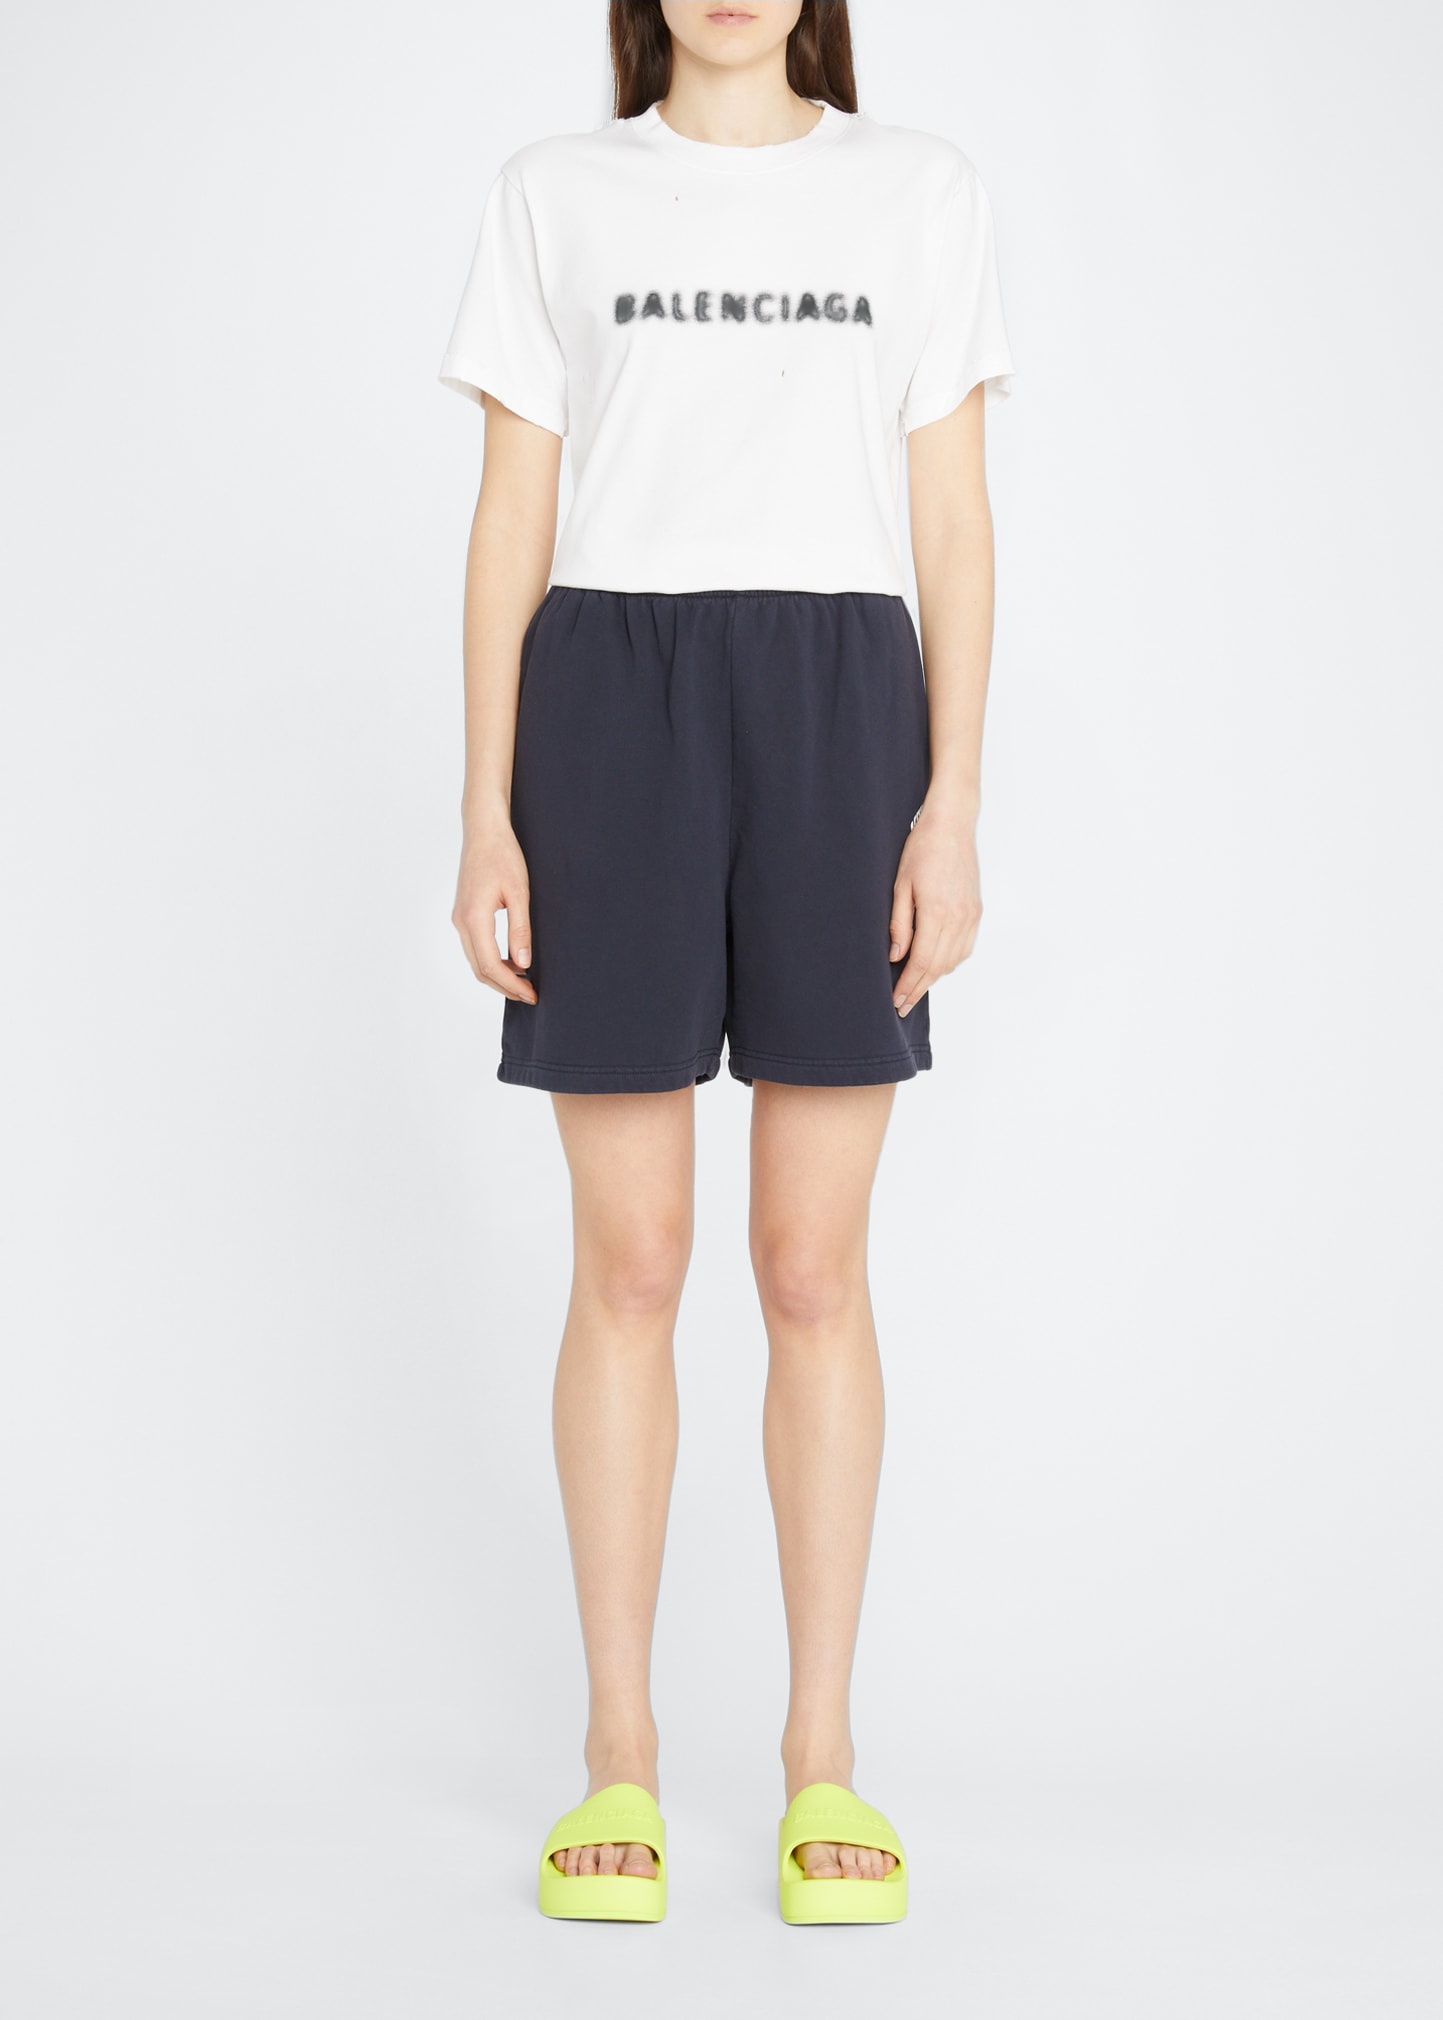 BALENCIAGA Shorts for Women | ModeSens